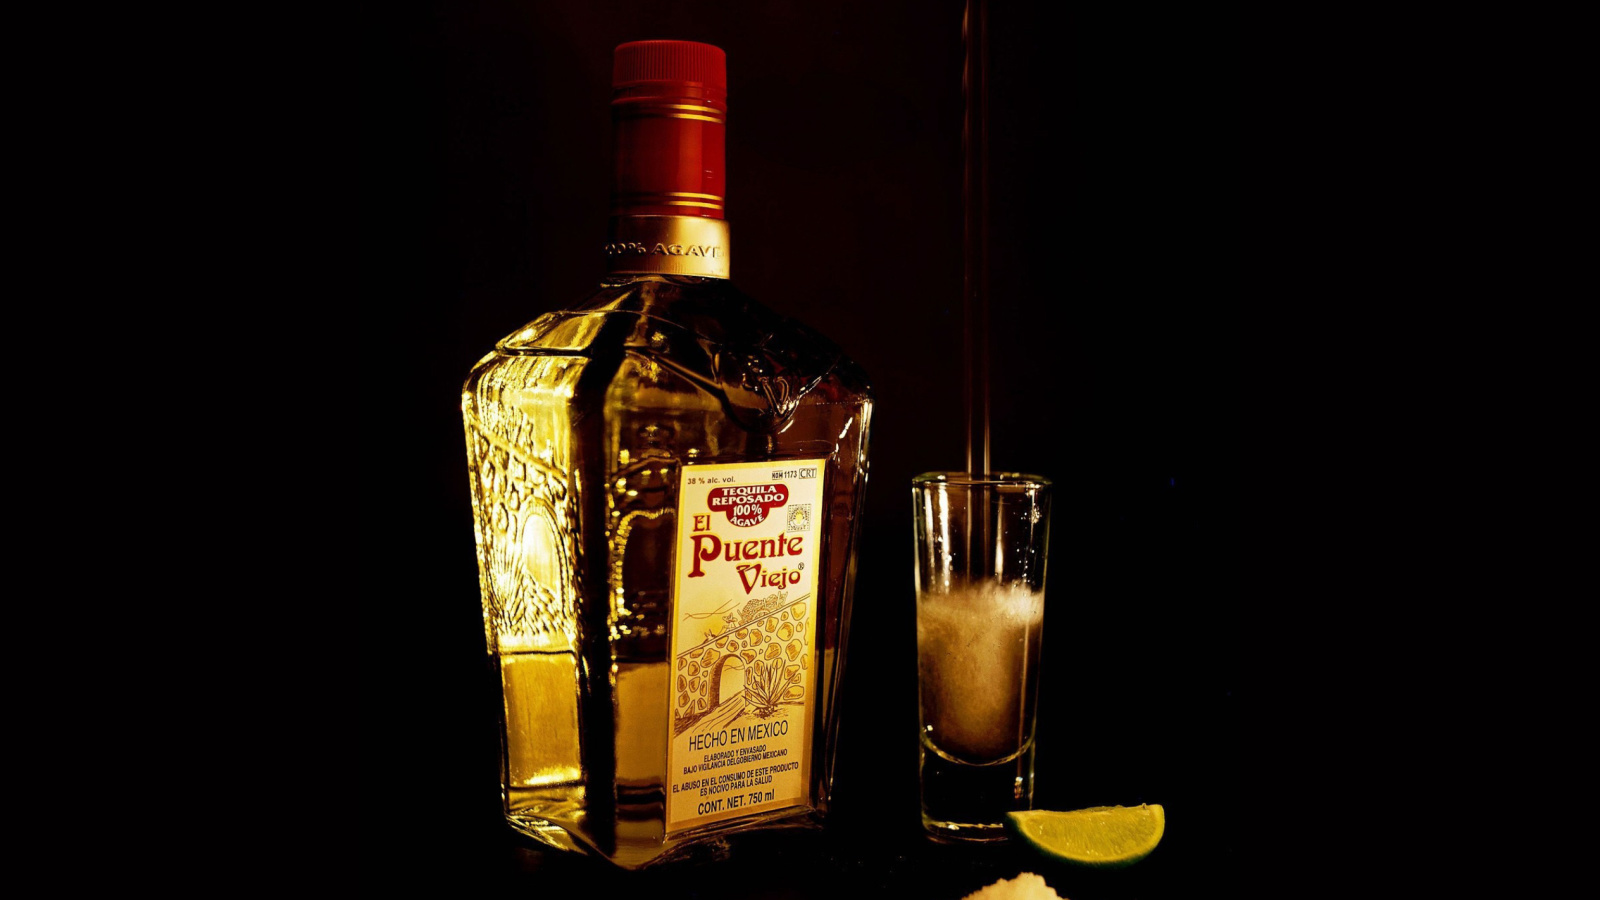 Das El puente Viejo Tequila with Salt Wallpaper 1600x900